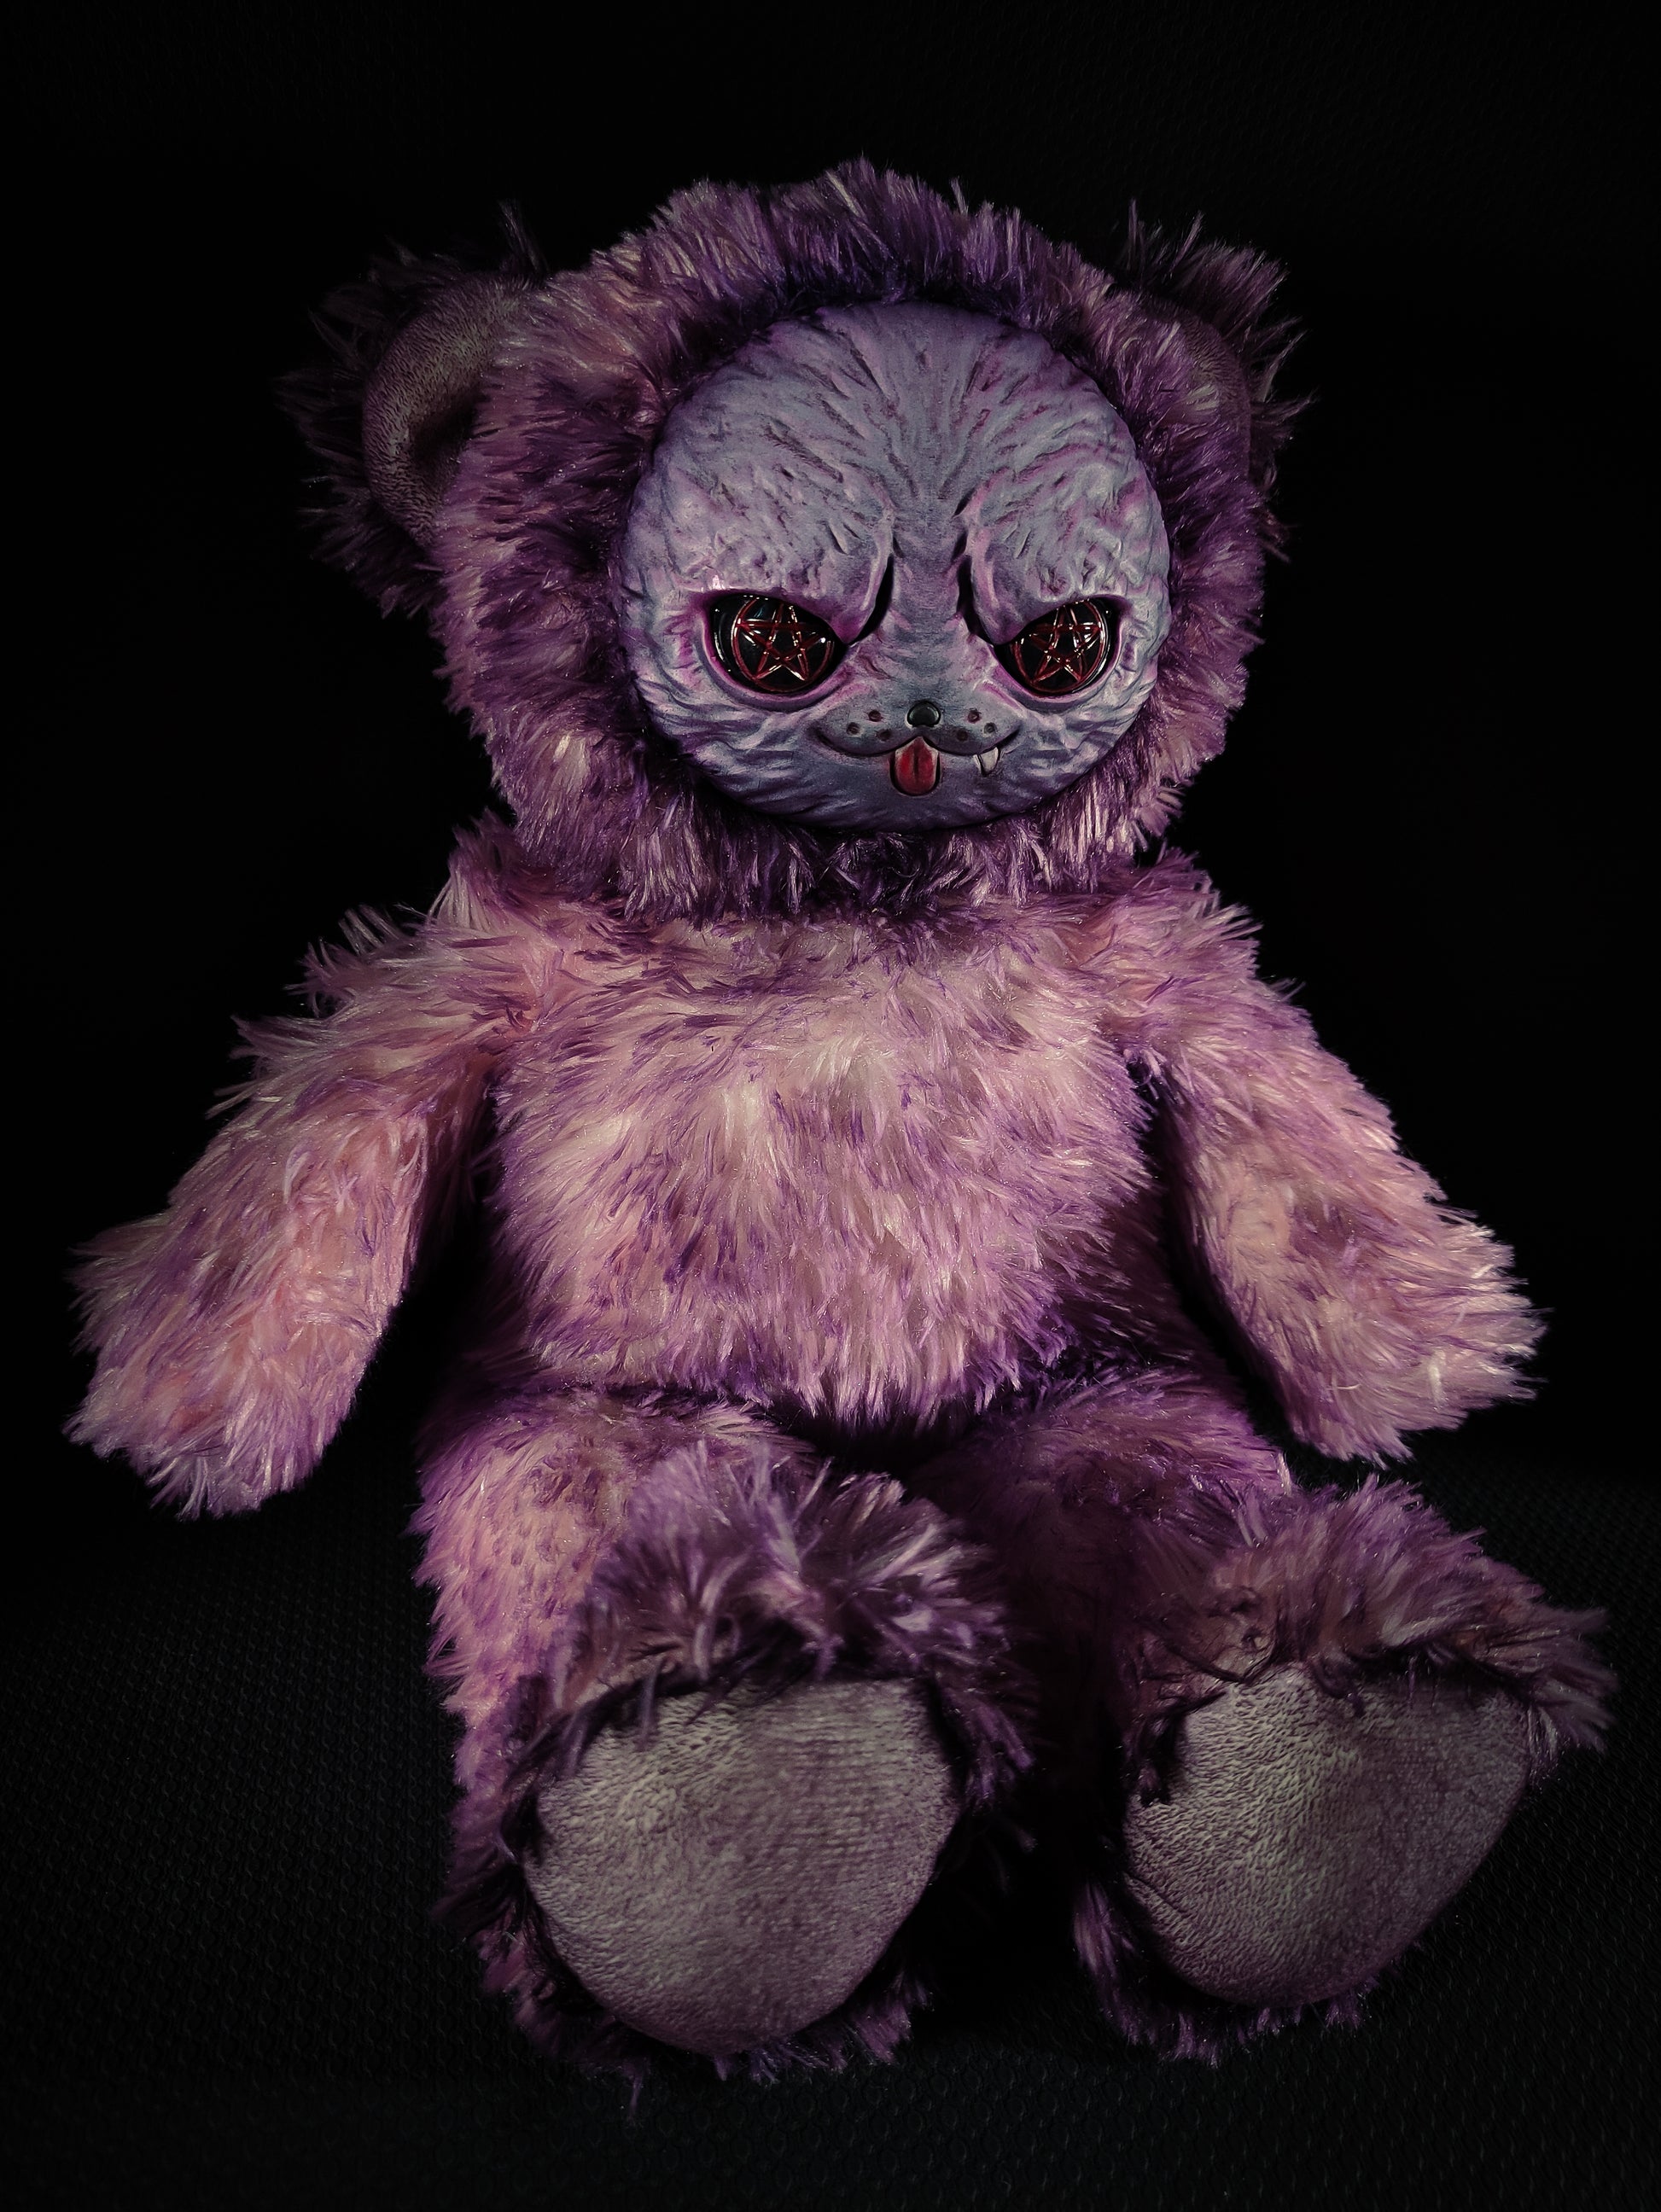 Purroz (Kandy Kitten Ver.) - Monster Art Doll Plush Toy